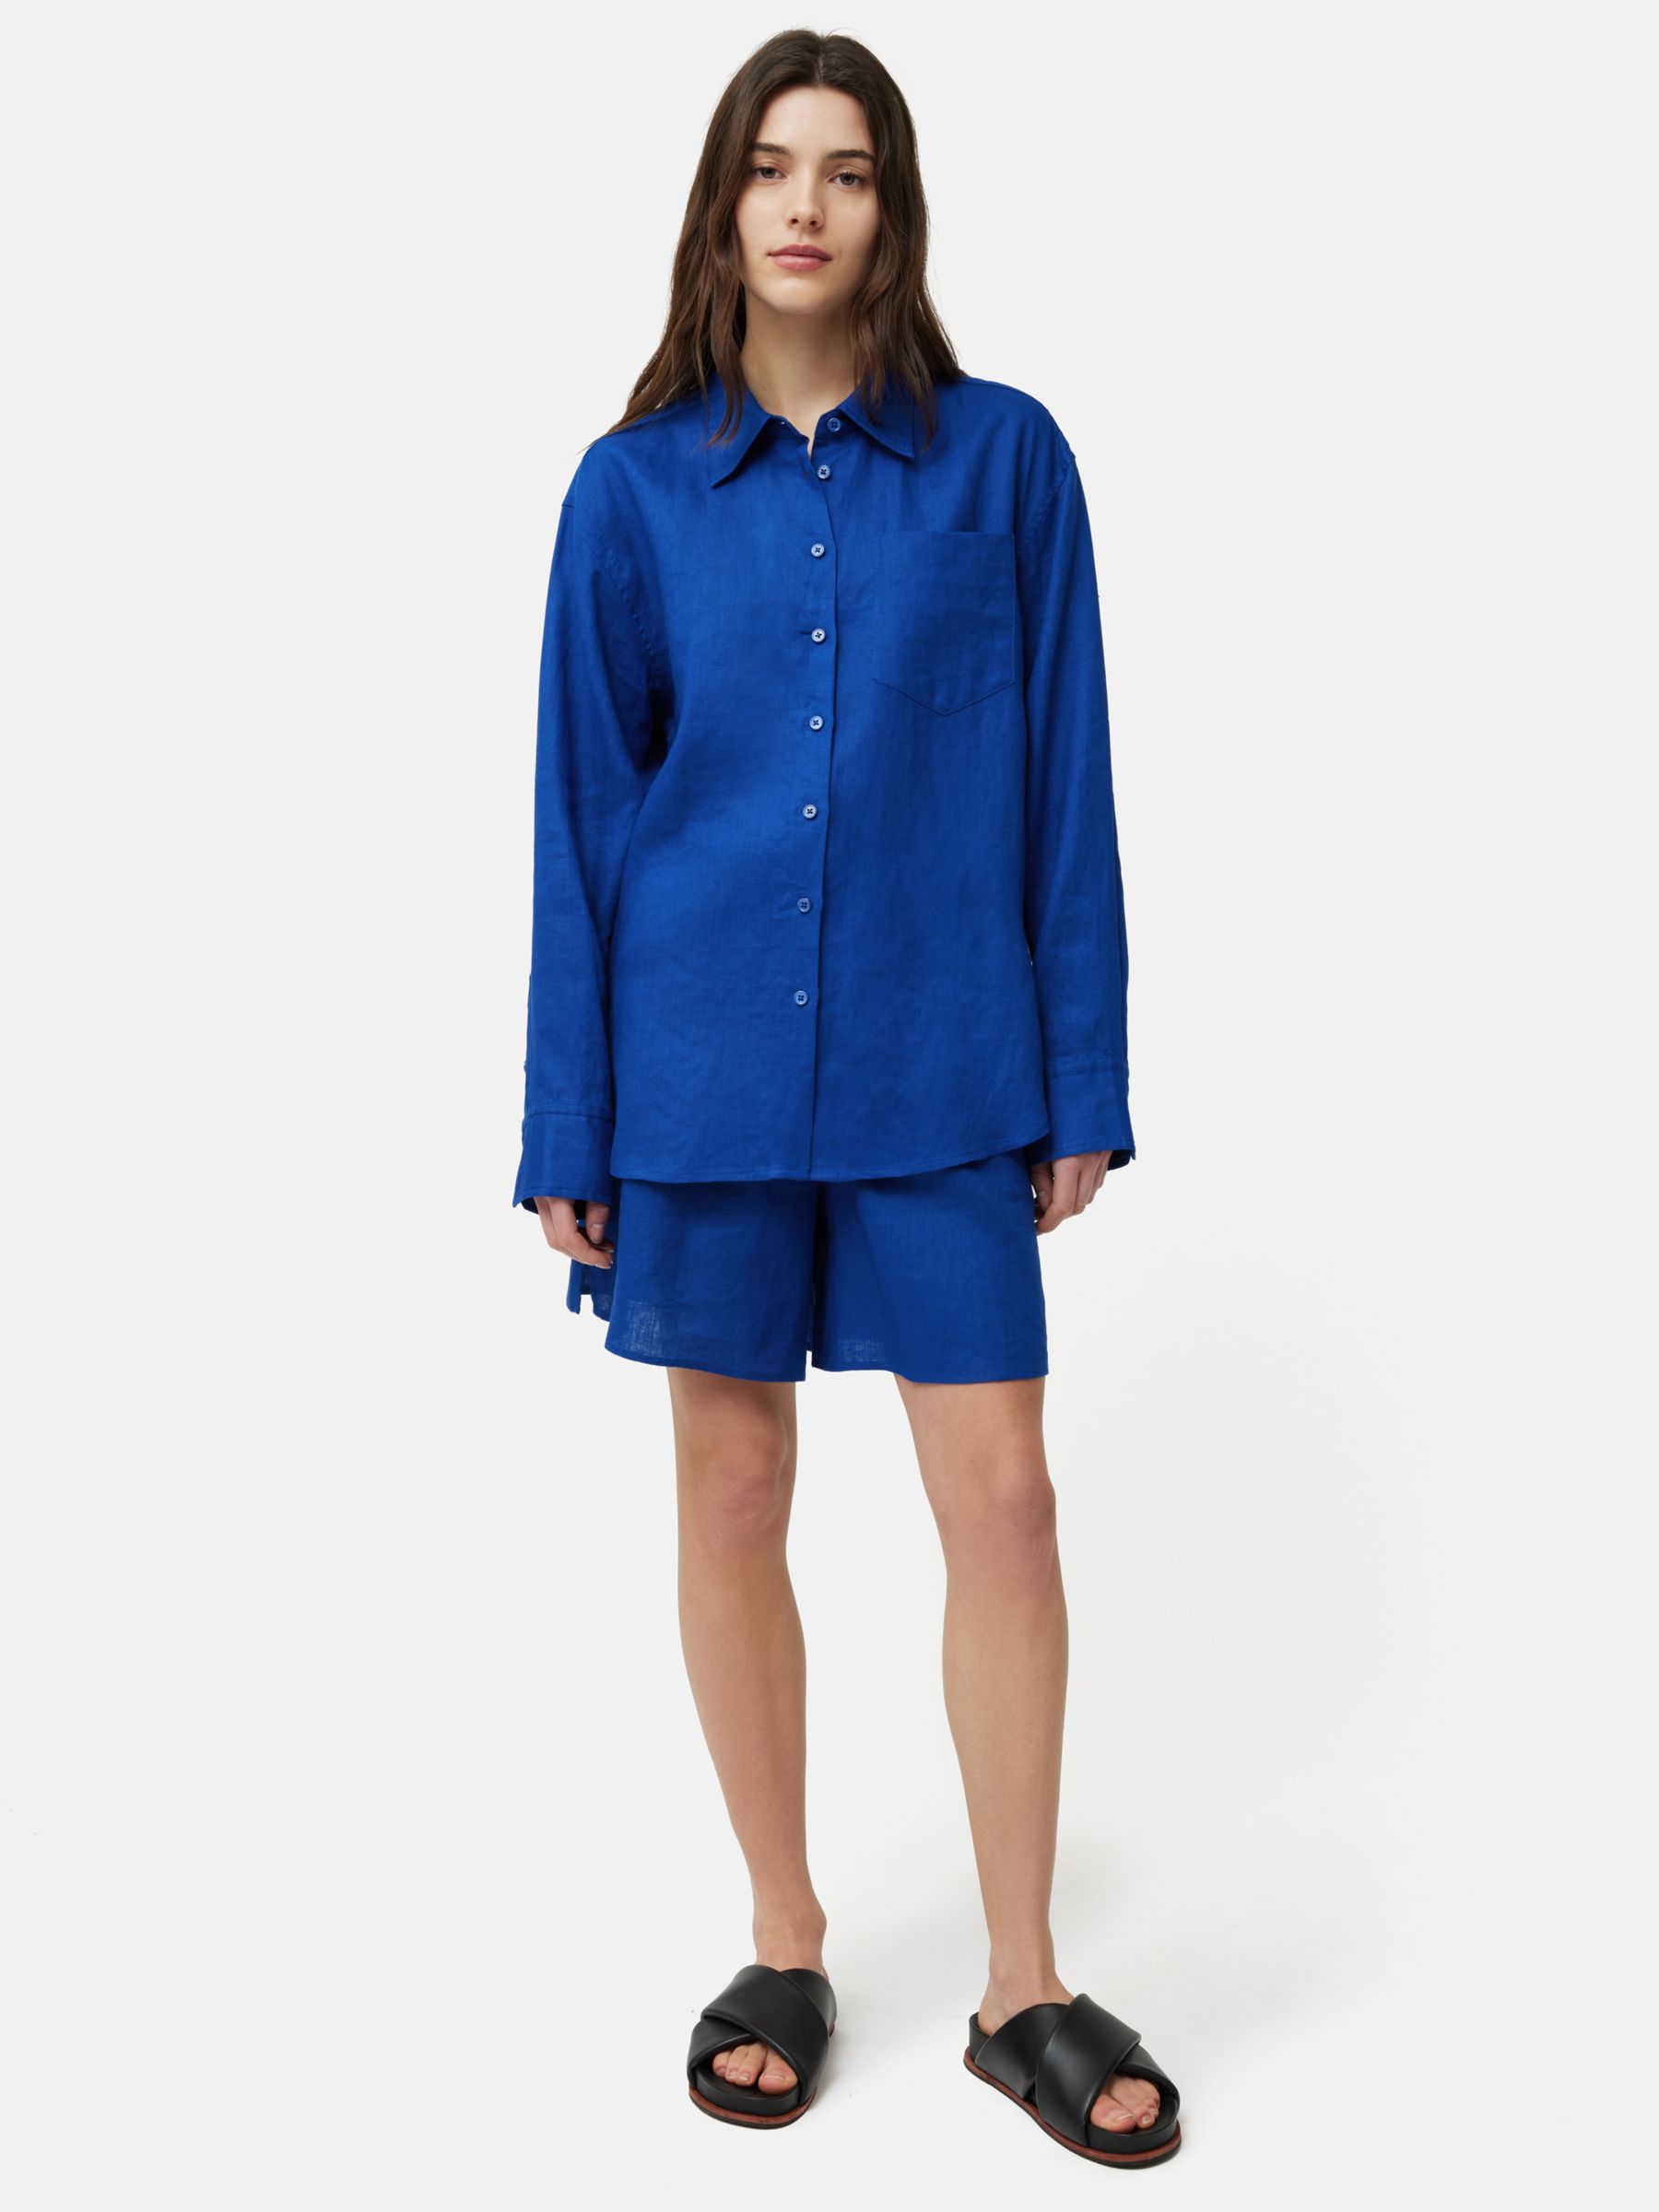 Jigsaw Elastic Waist Linen Shorts, Blue, 6